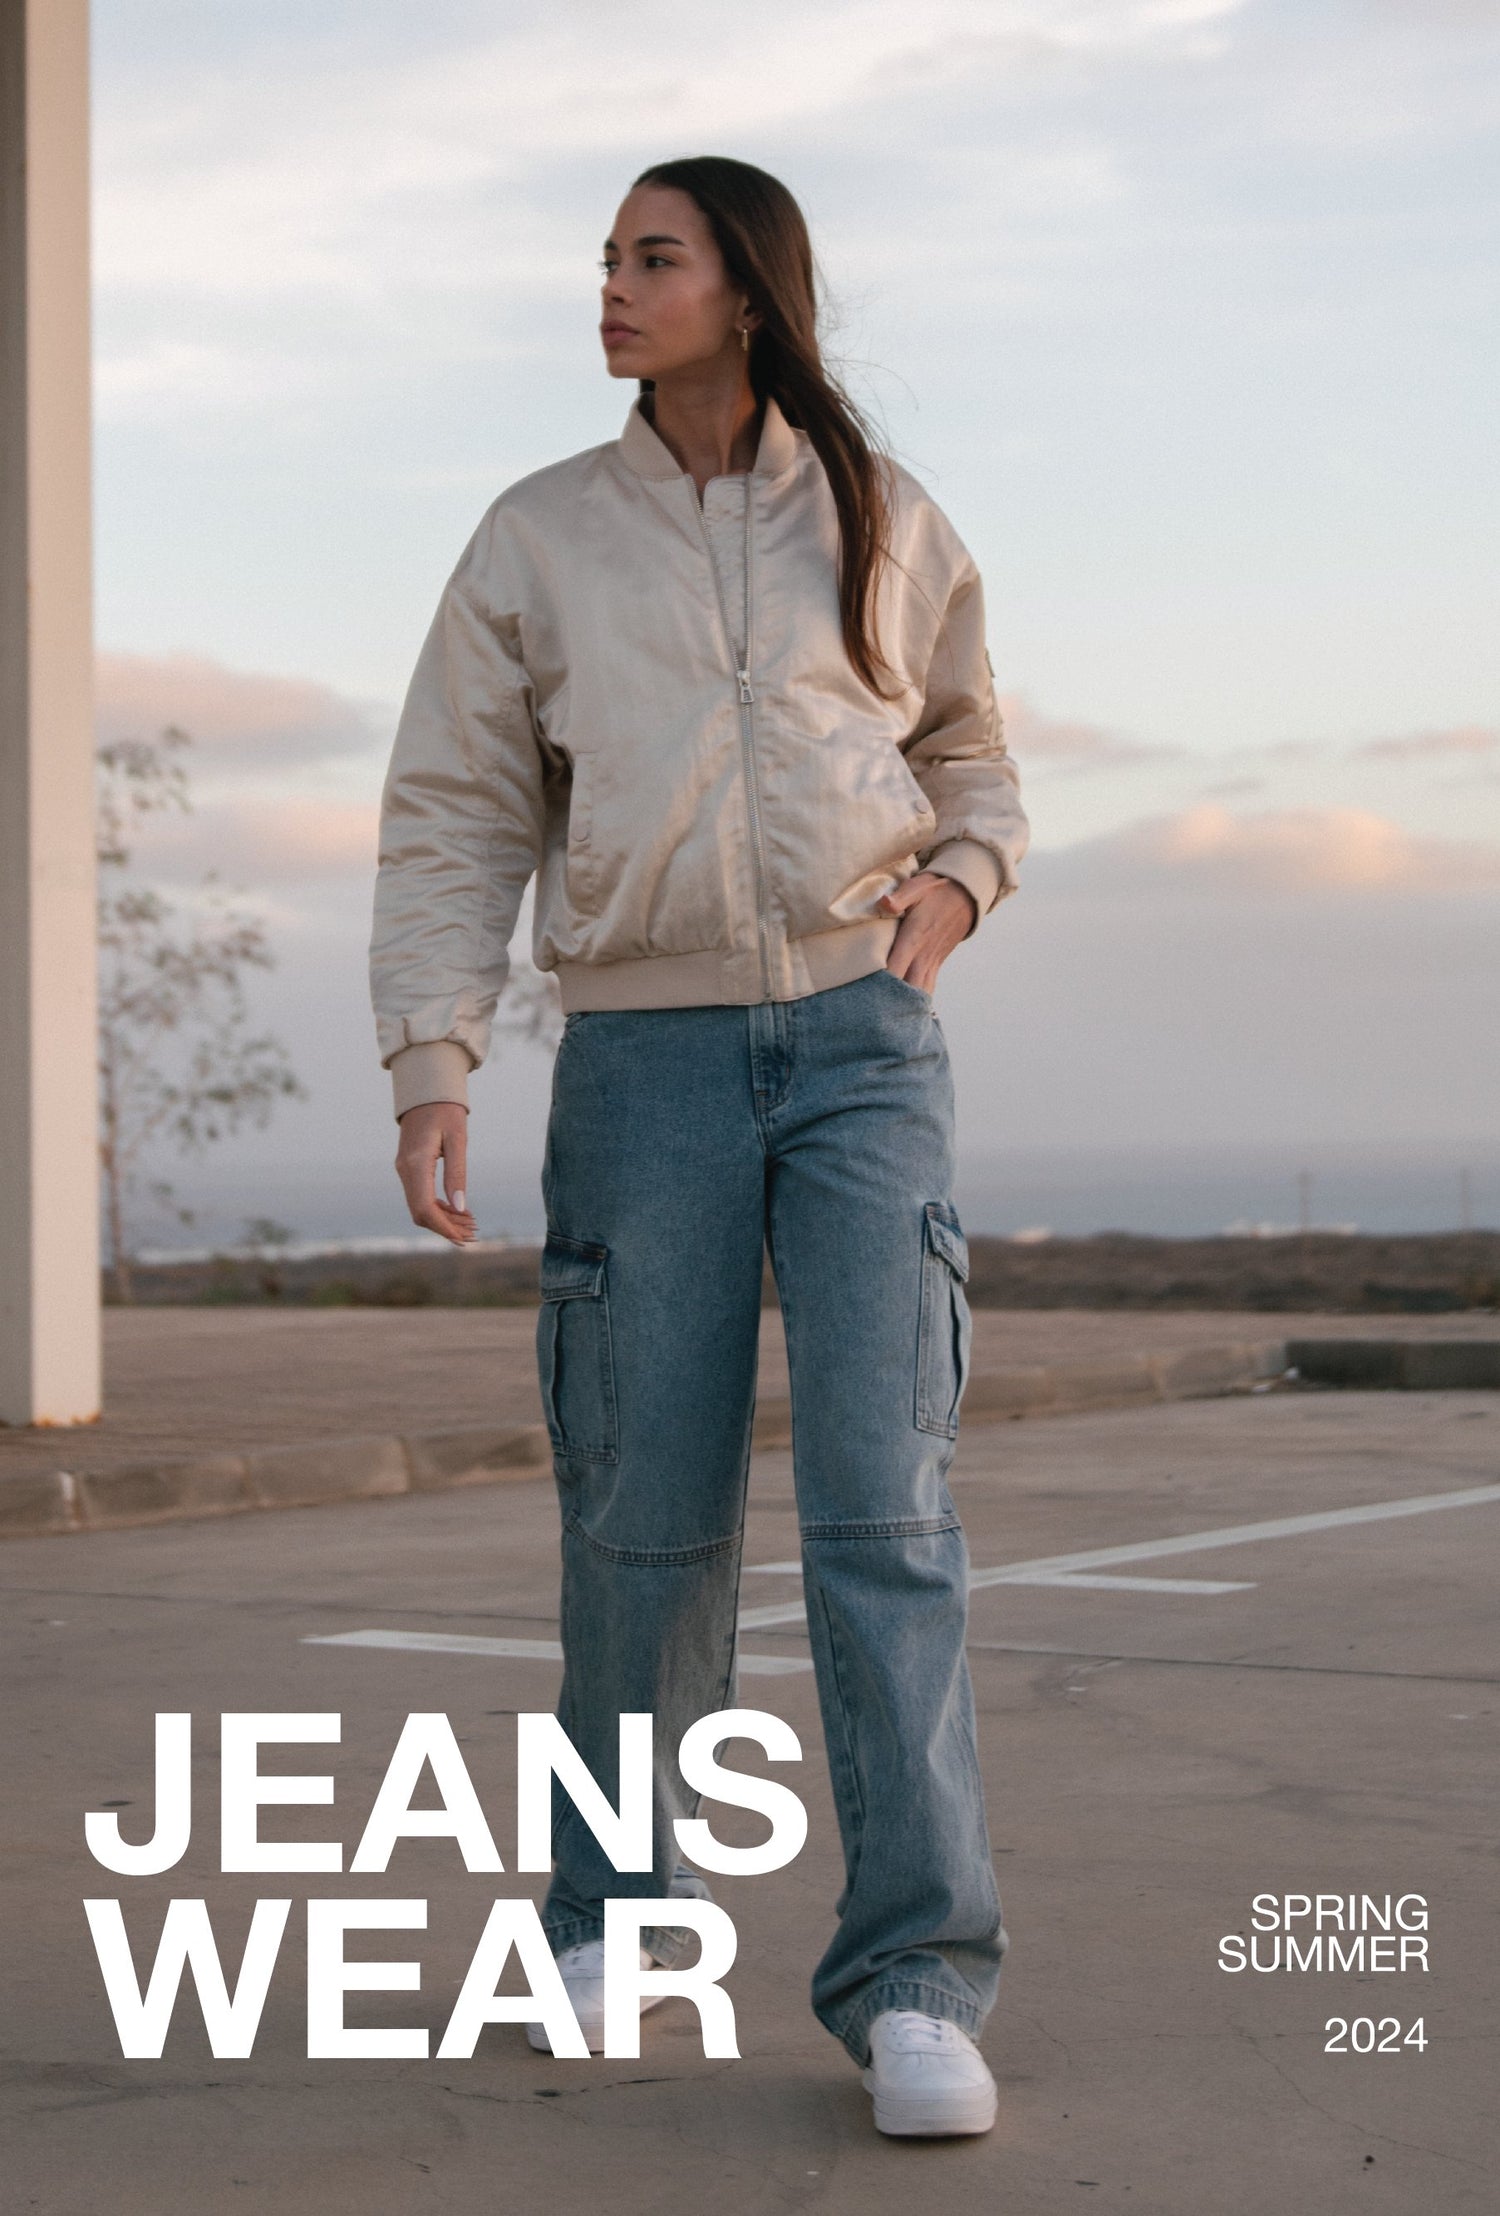 Jeanswear